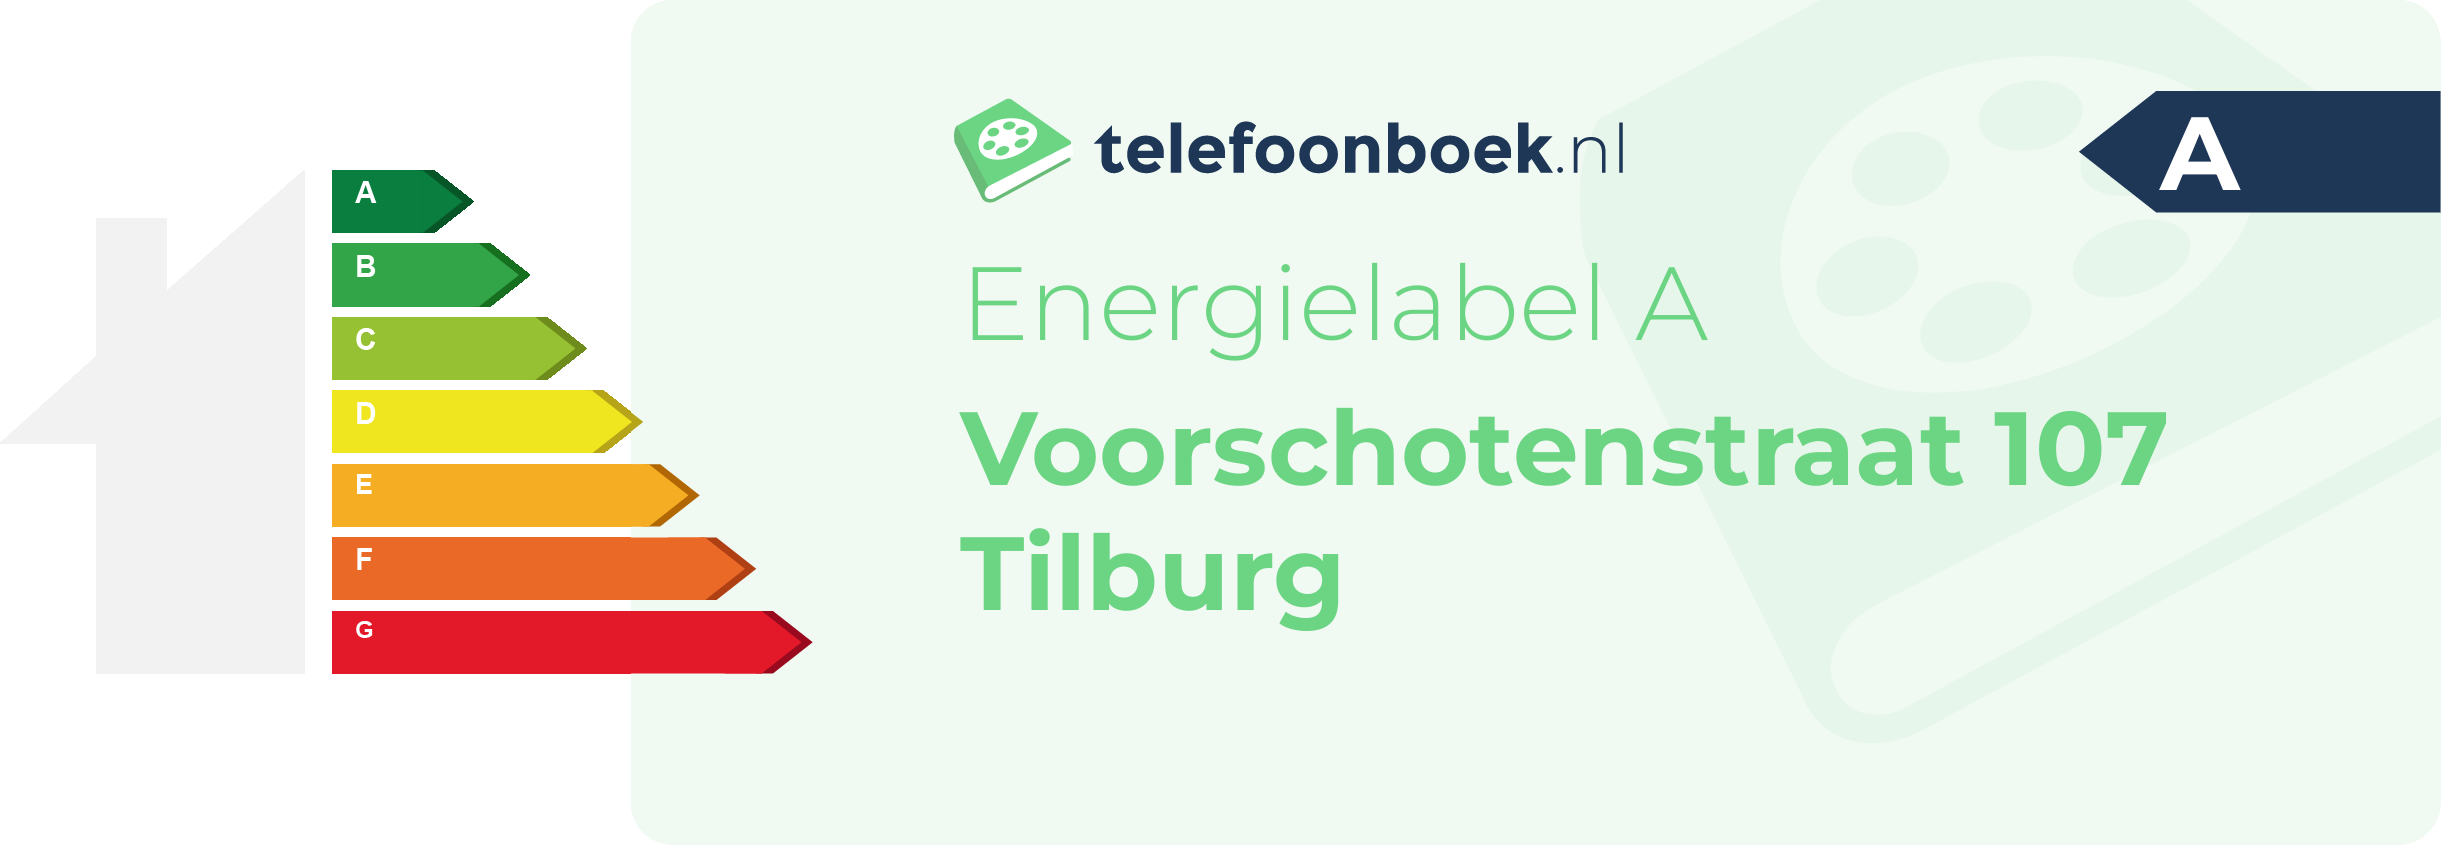 Energielabel Voorschotenstraat 107 Tilburg